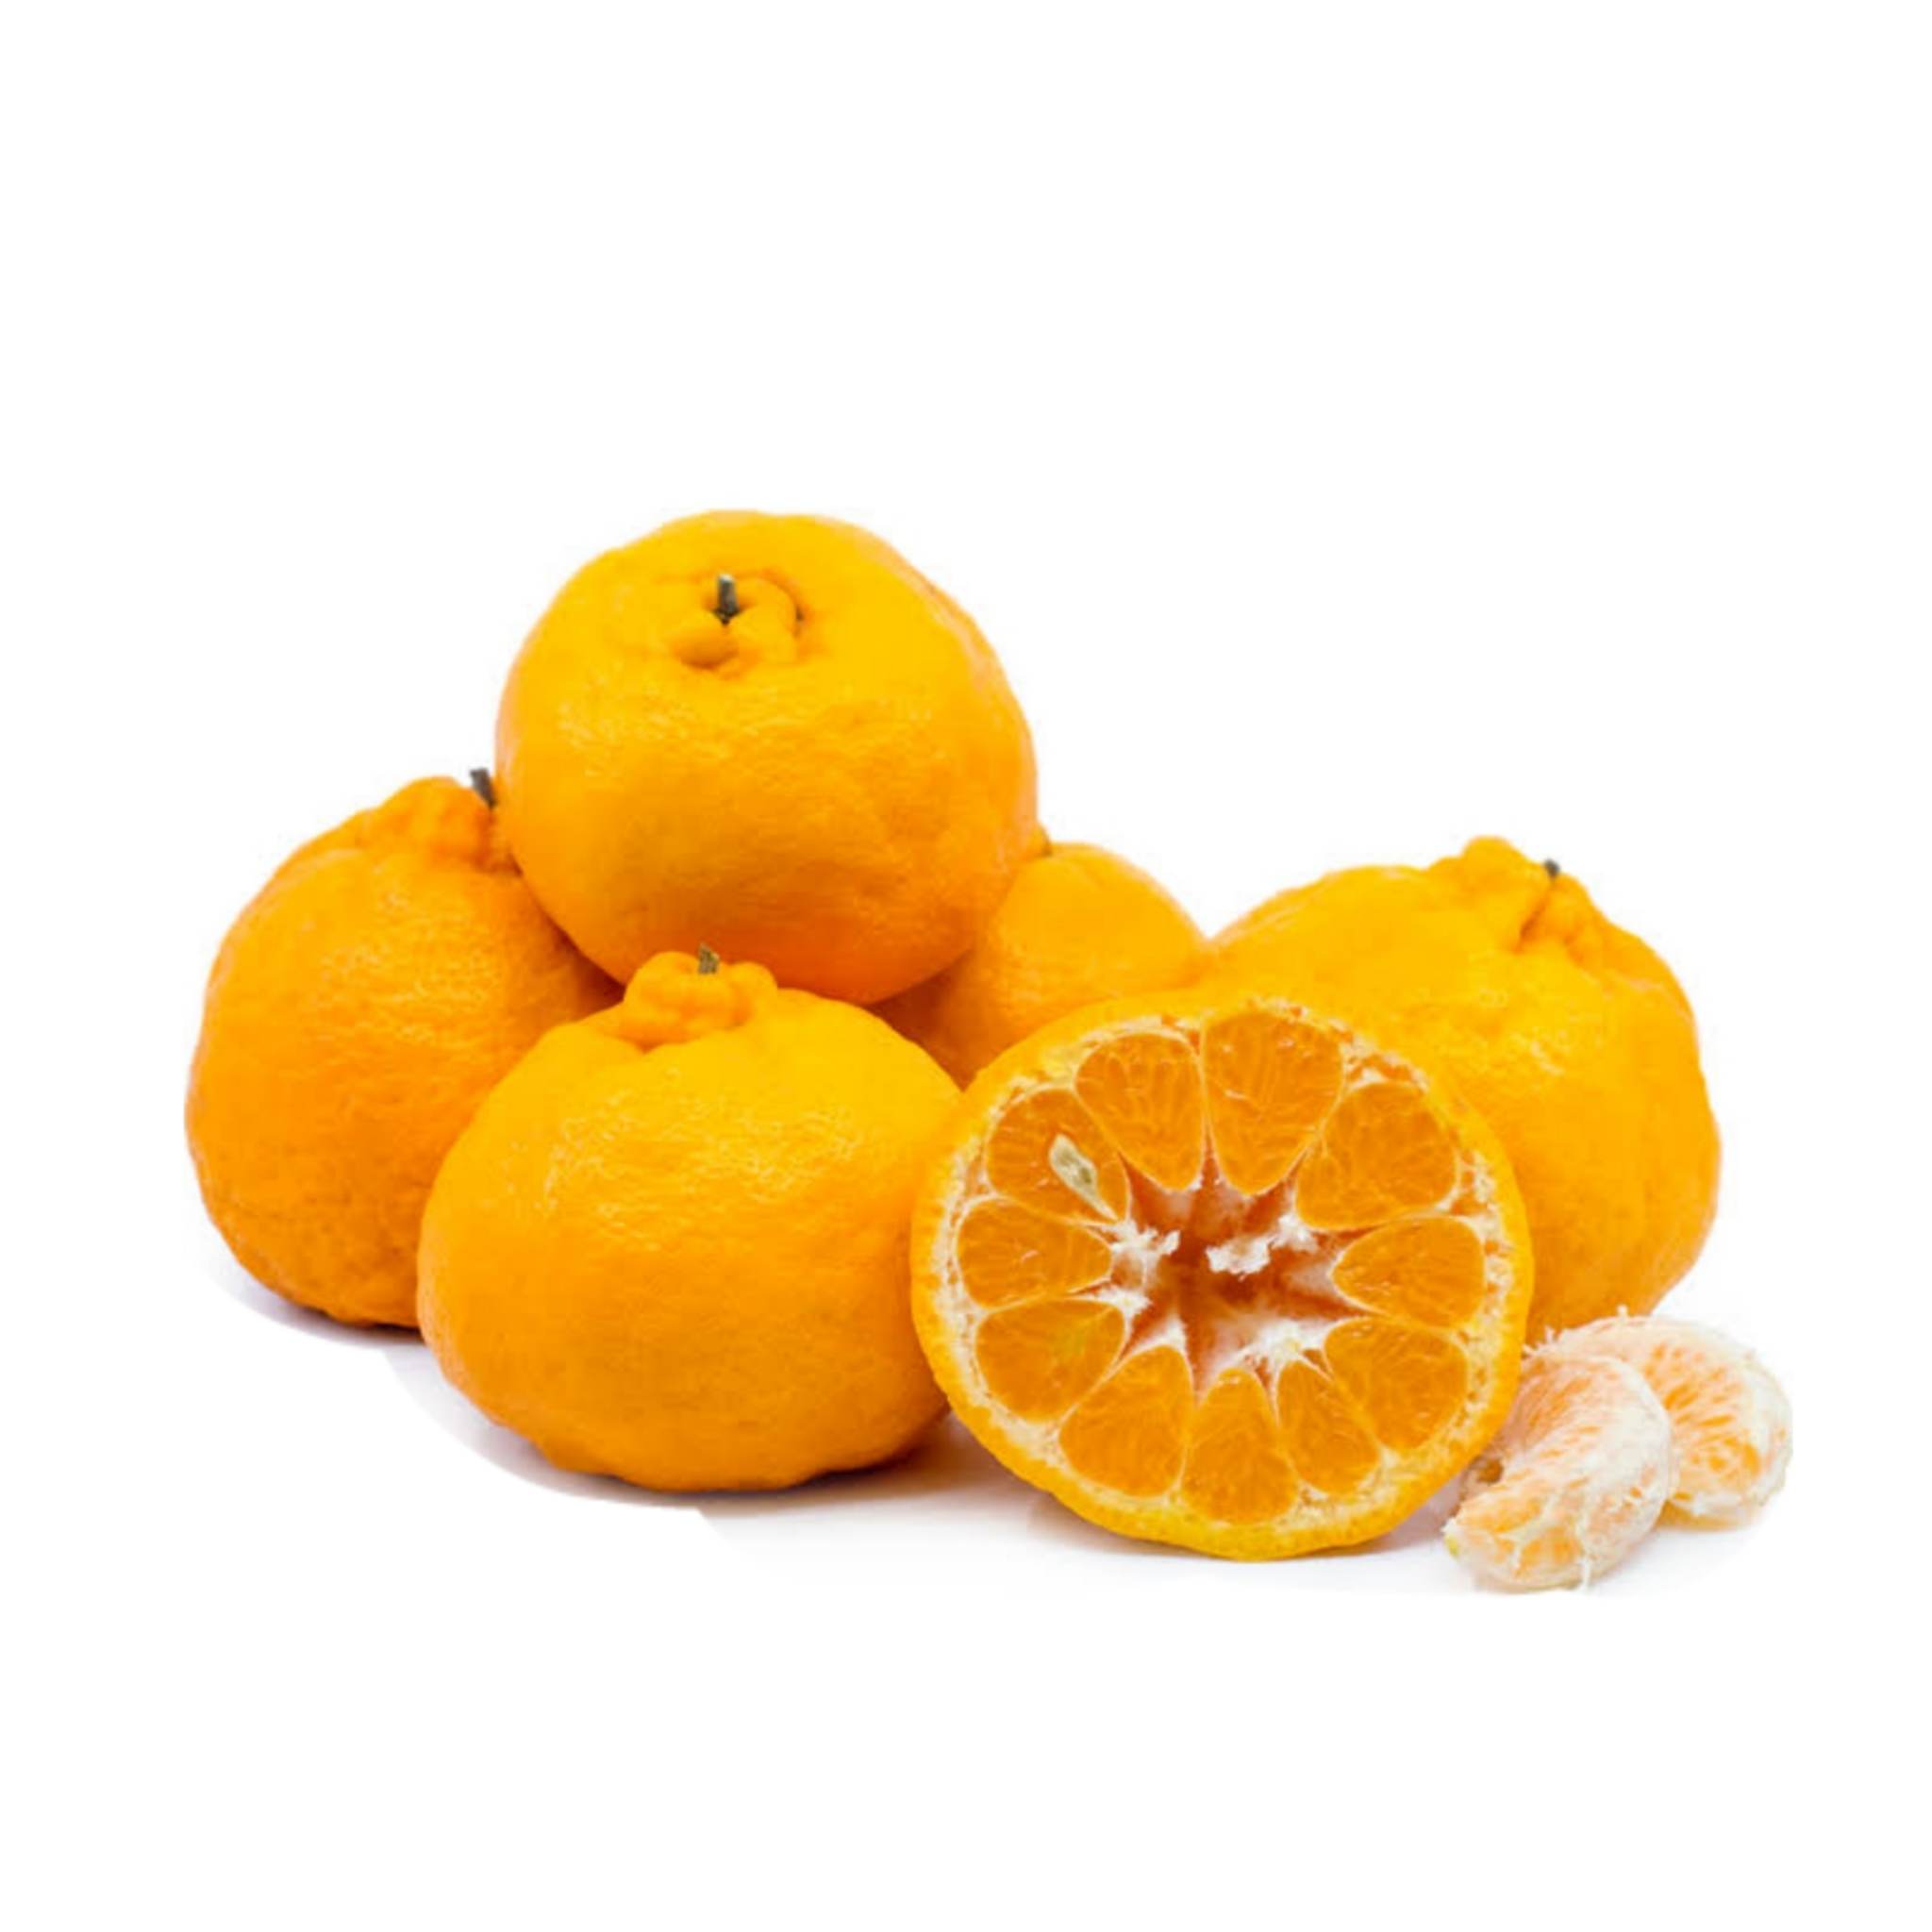 橘子柑橘 (orange citrus)